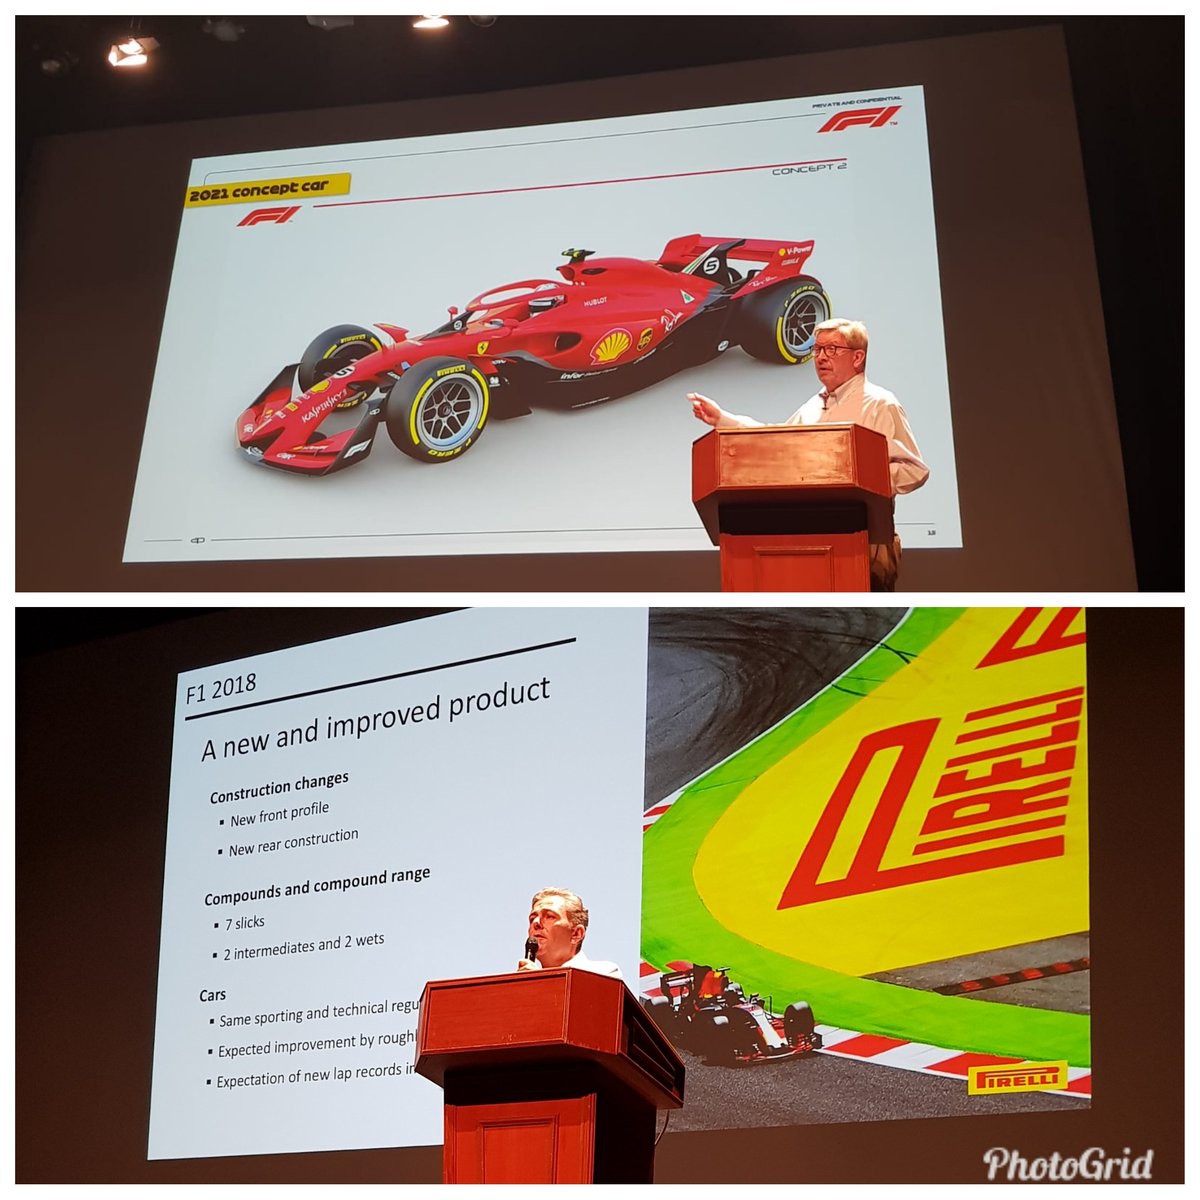 NÓNG: Rò rỉ hình ảnh mới của mẫu xe đua F1 từ mùa giải 2021 - Ảnh 2.